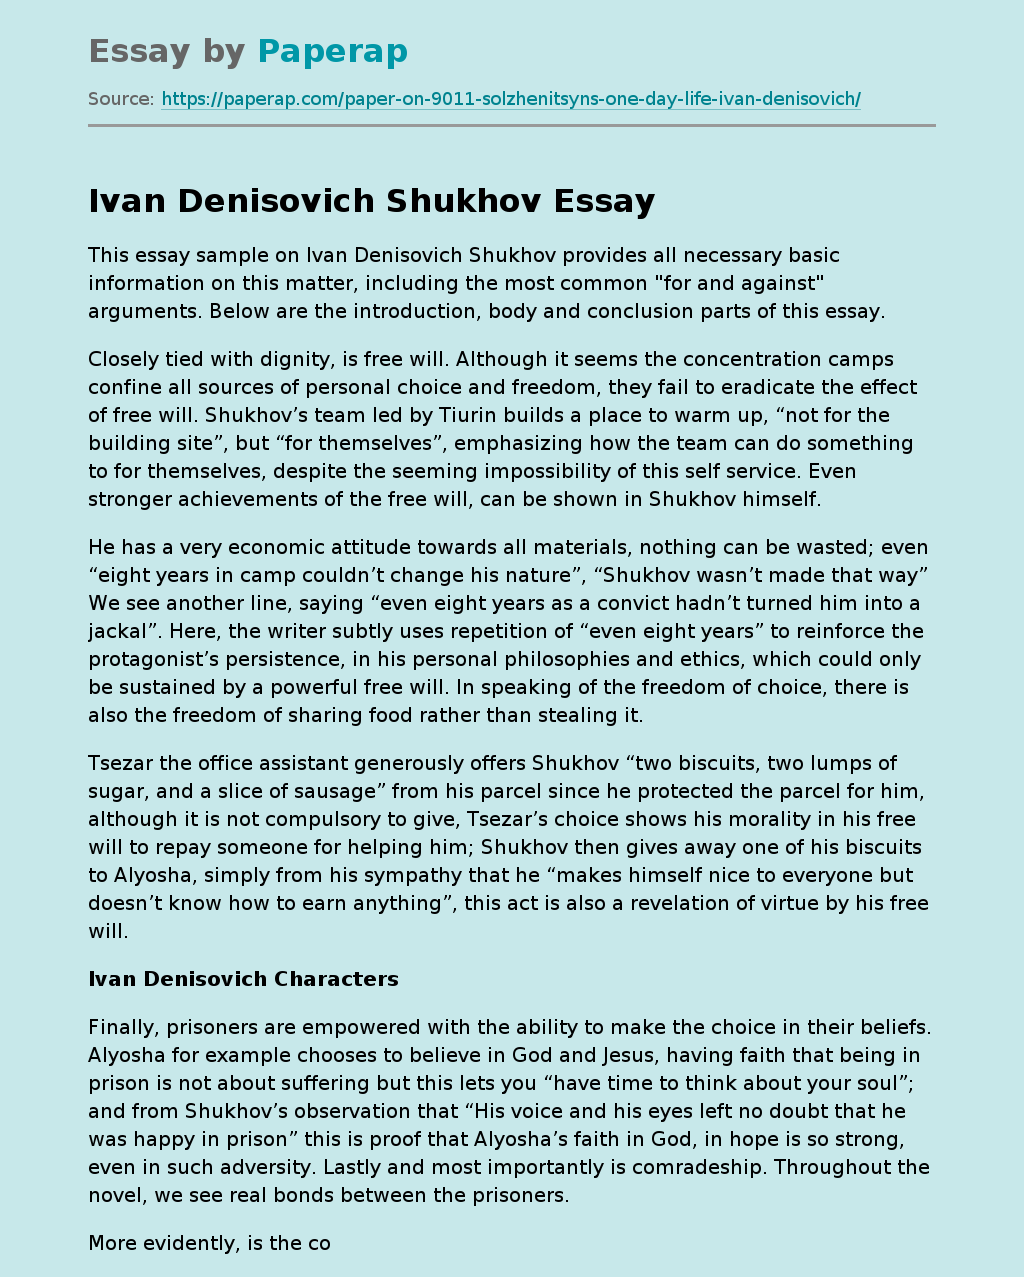 Essay Sample on Ivan Denisovich Shukhov